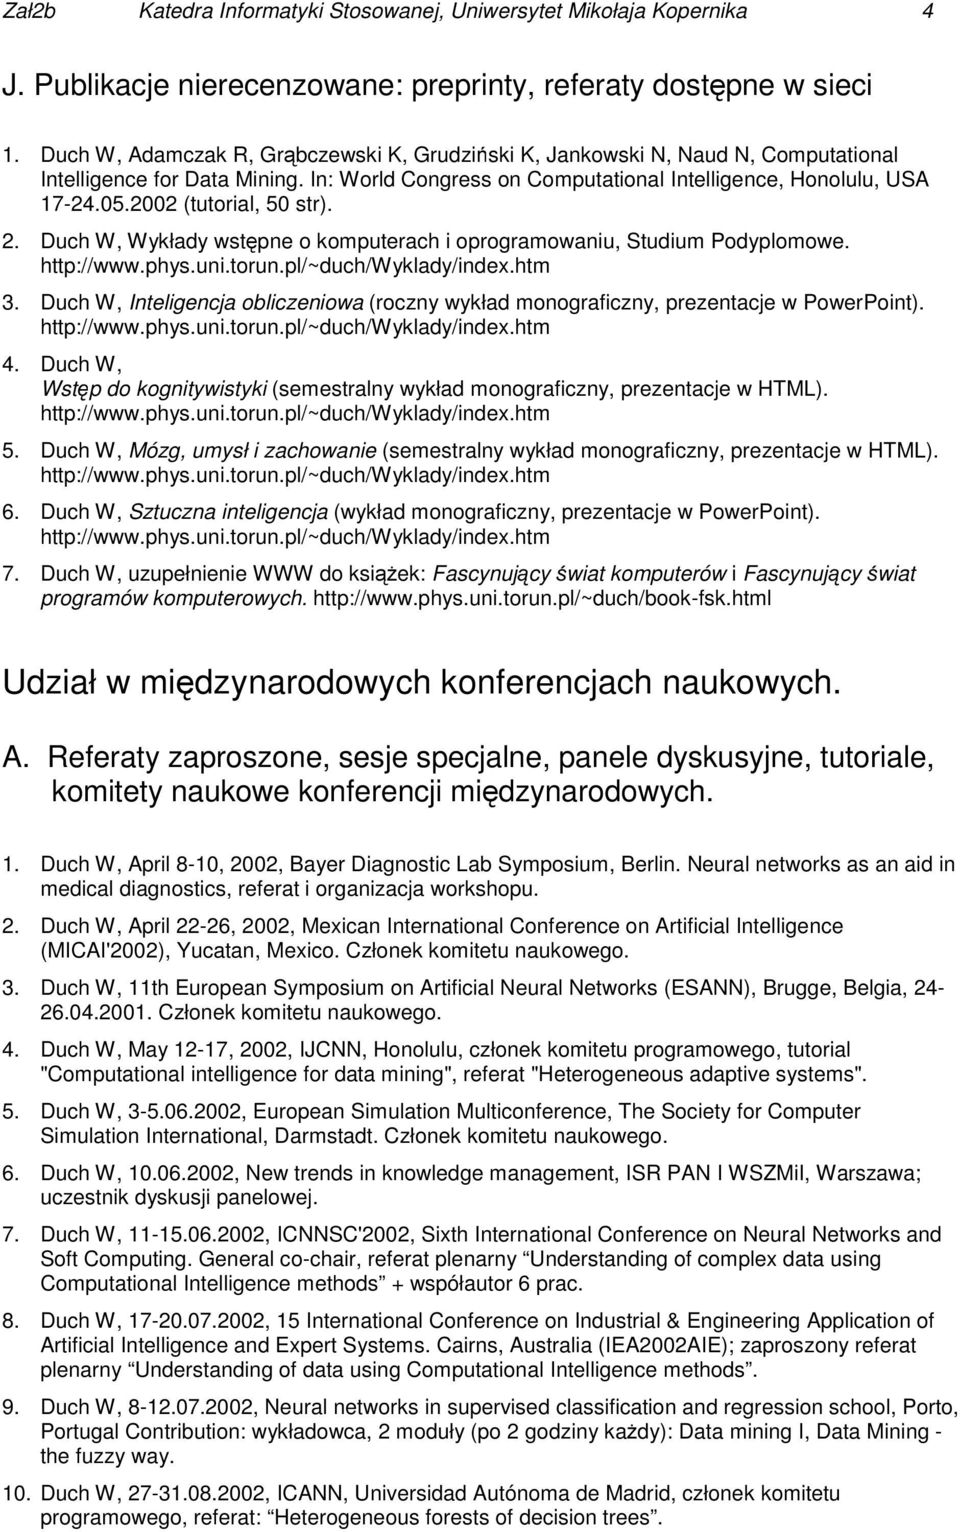 2002 (tutorial, 50 str). 2. Duch W, Wykłady wstępne o komputerach i oprogramowaniu, Studium Podyplomowe. http://www.phys.uni.torun.pl/~duch/wyklady/index.htm 3.